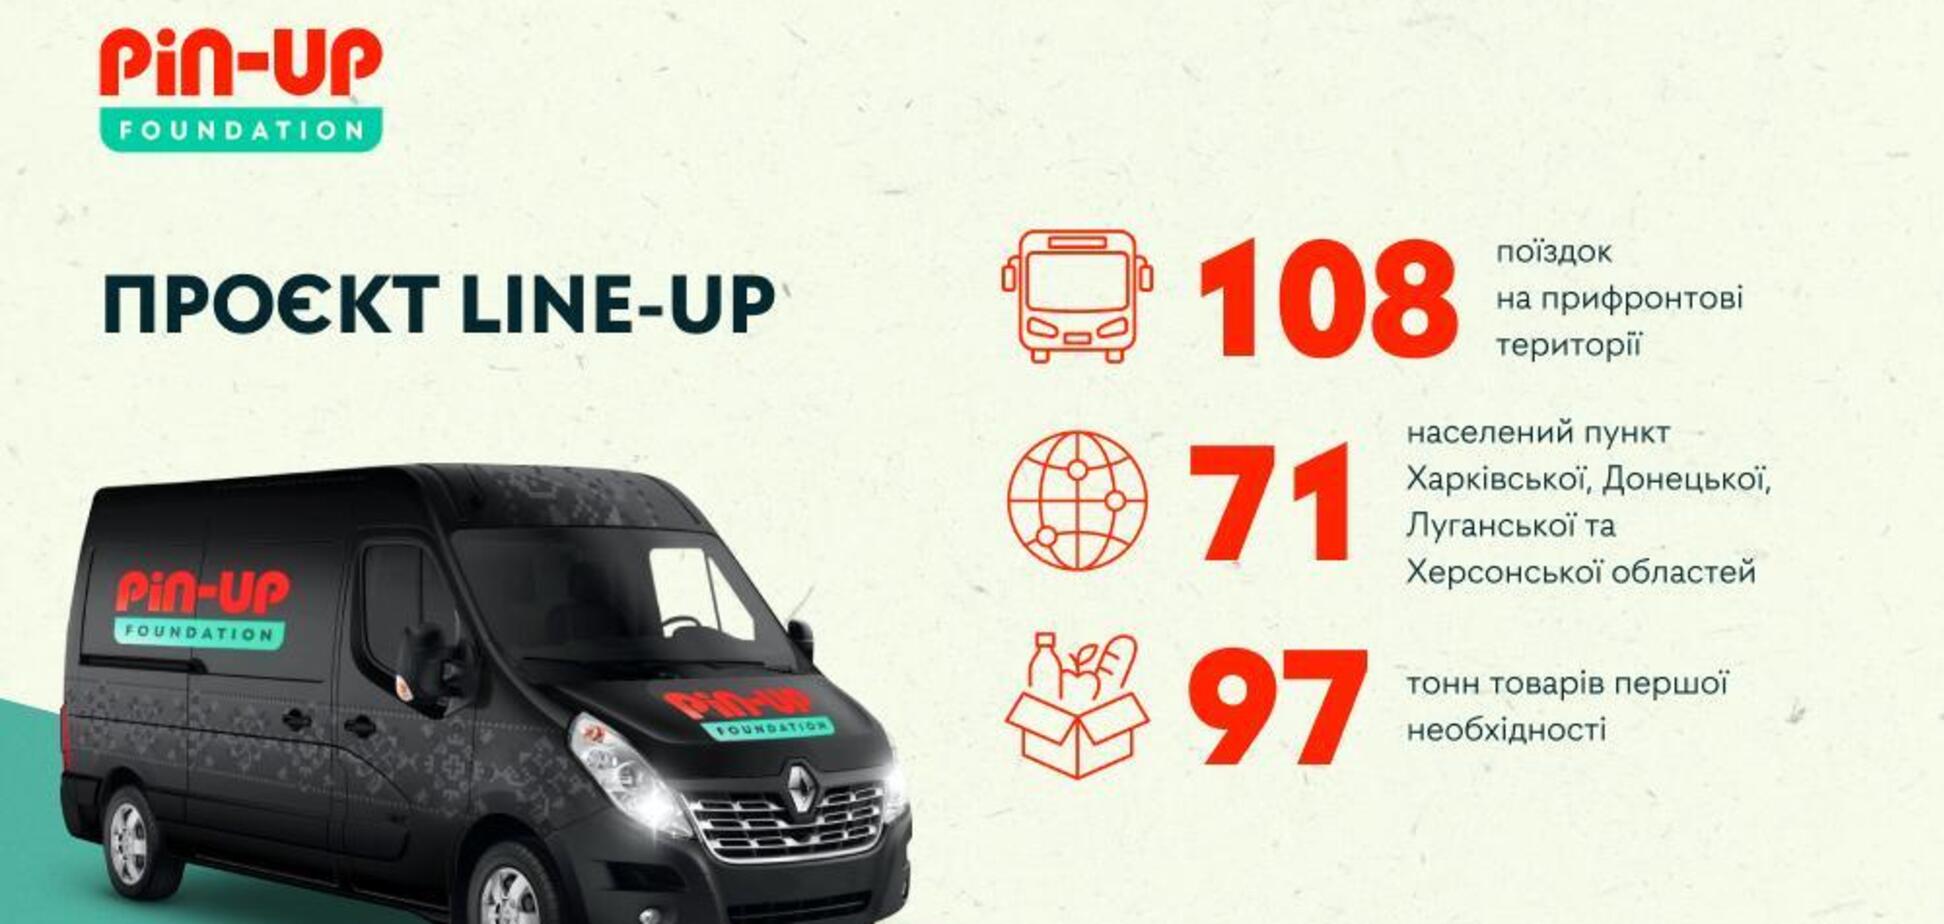 PIN-UP Foundation доставив 97 тонн товарів першої необхідності у прифронтові міста за понад пів року